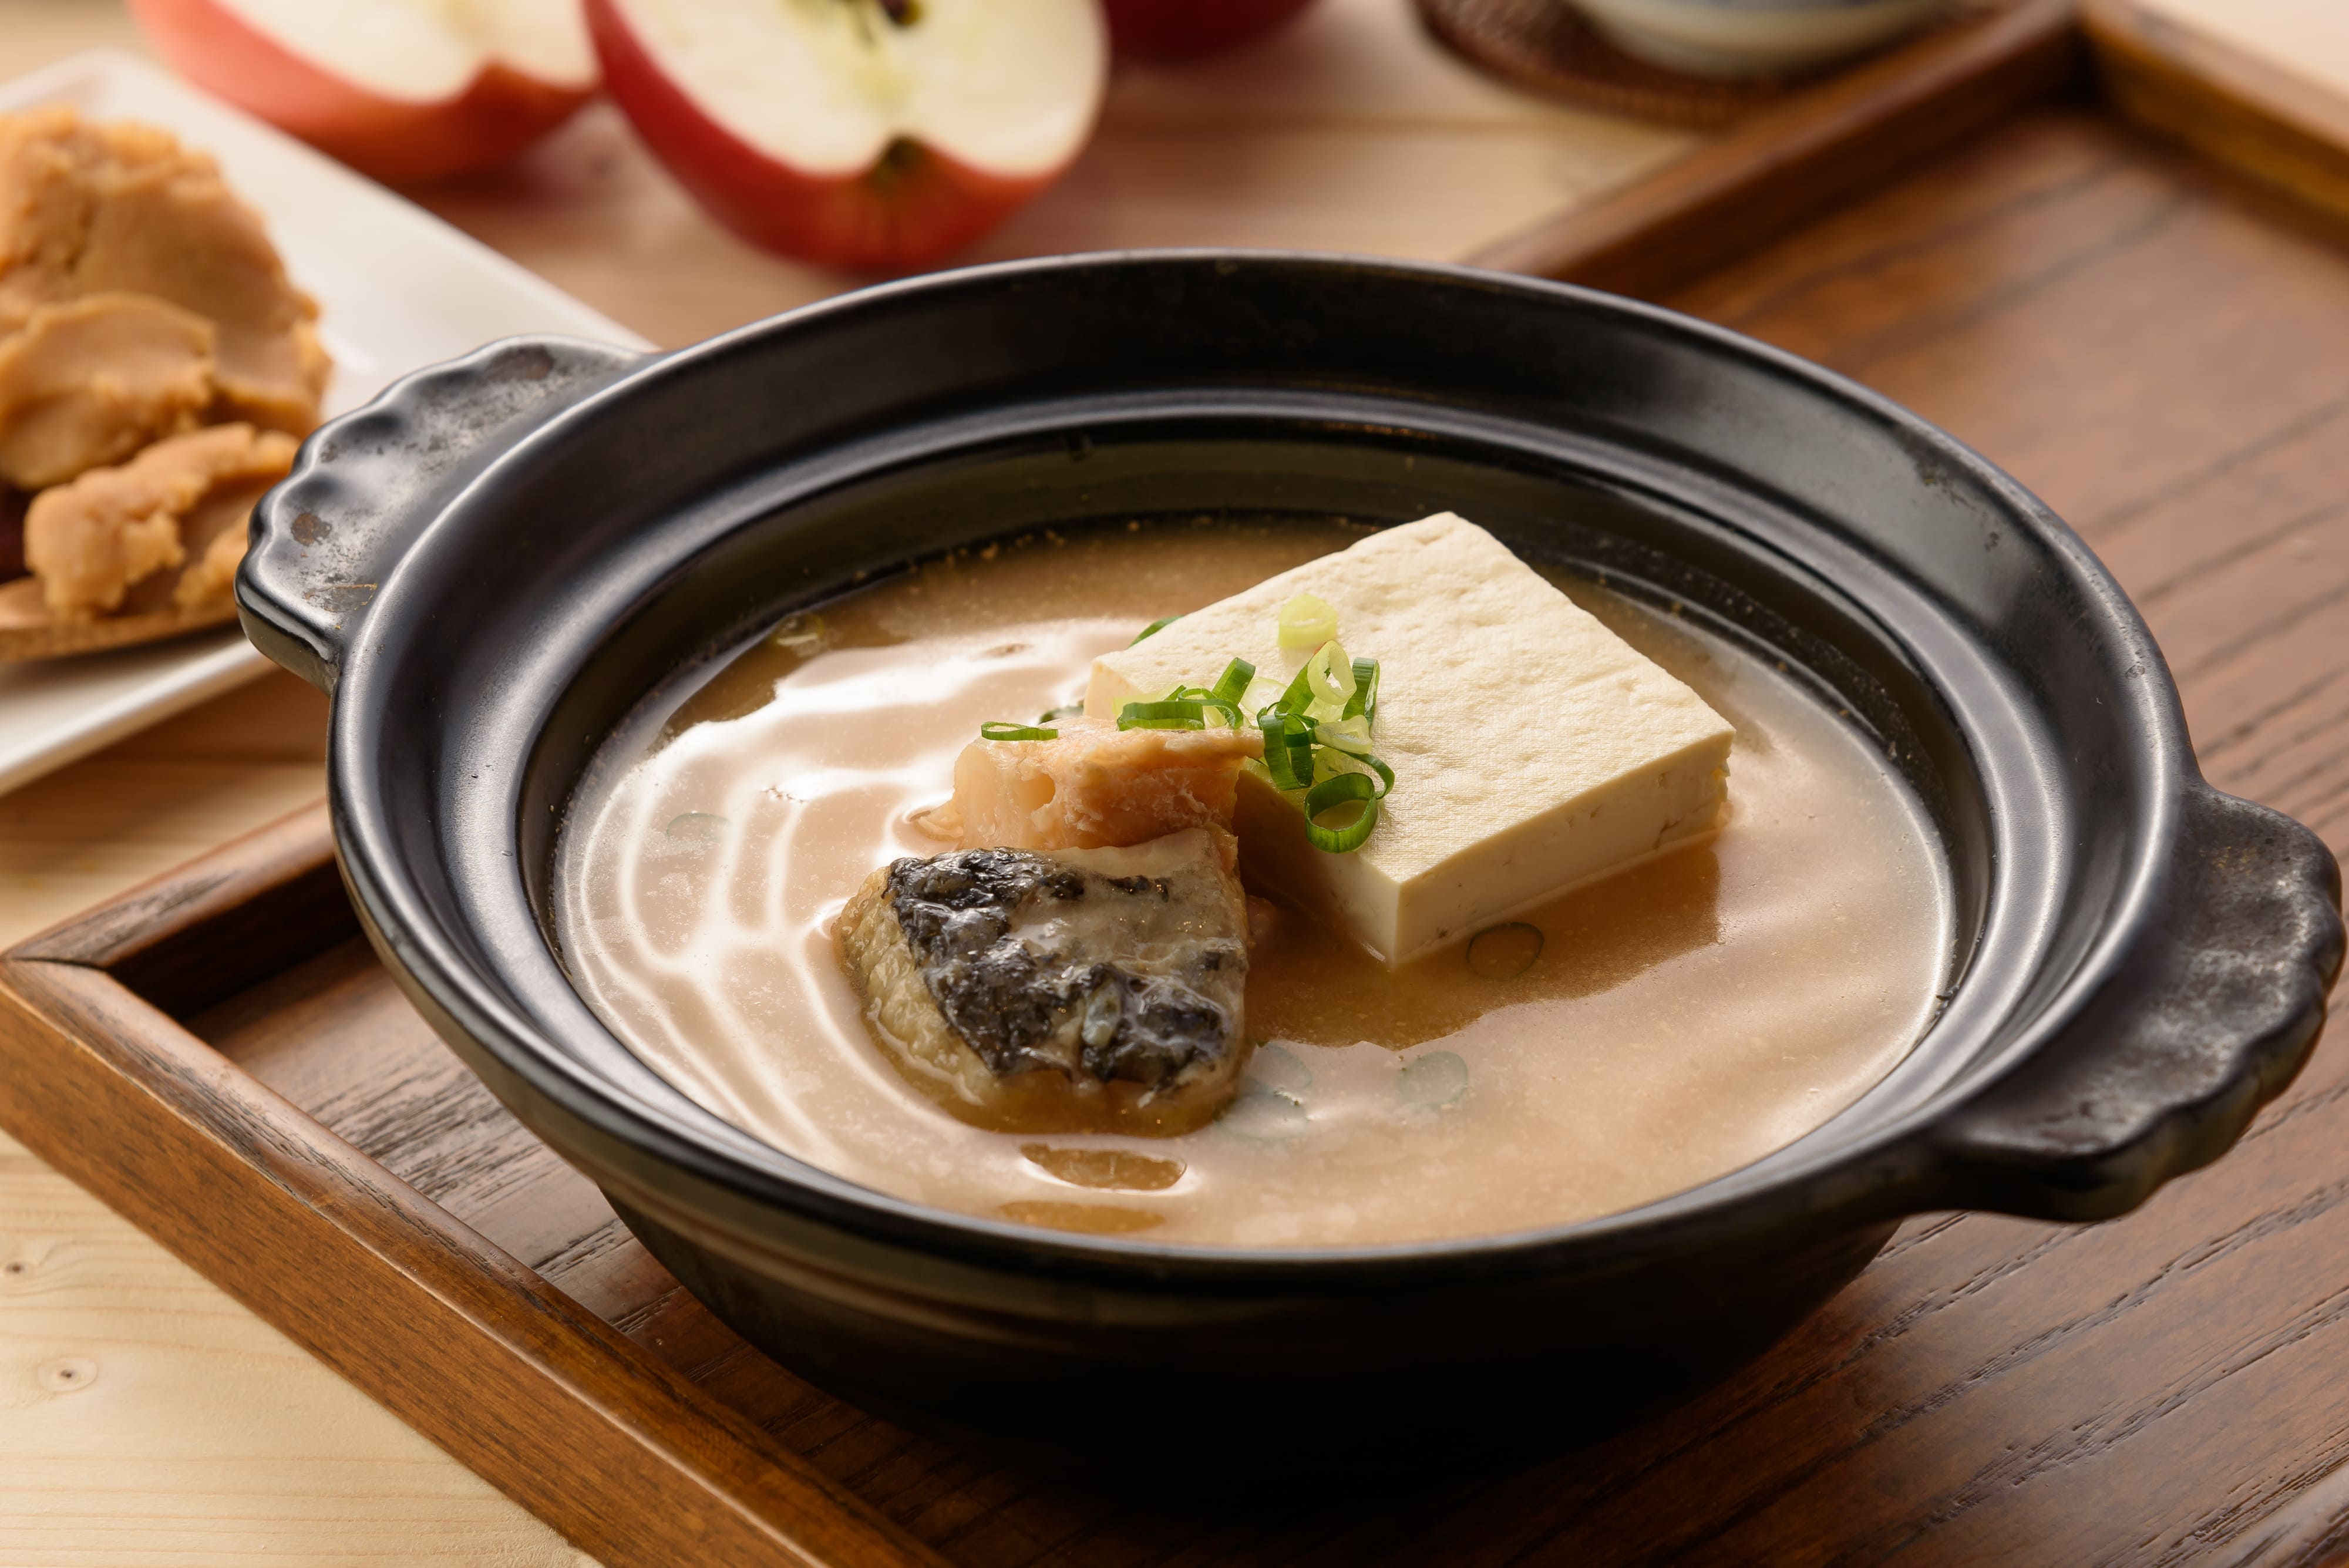 濃郁的味噌搭配北海道昆布的回甘，帶著蘋果的清甜也是暖胃的好湯底，撒上七味粉美味更升級。